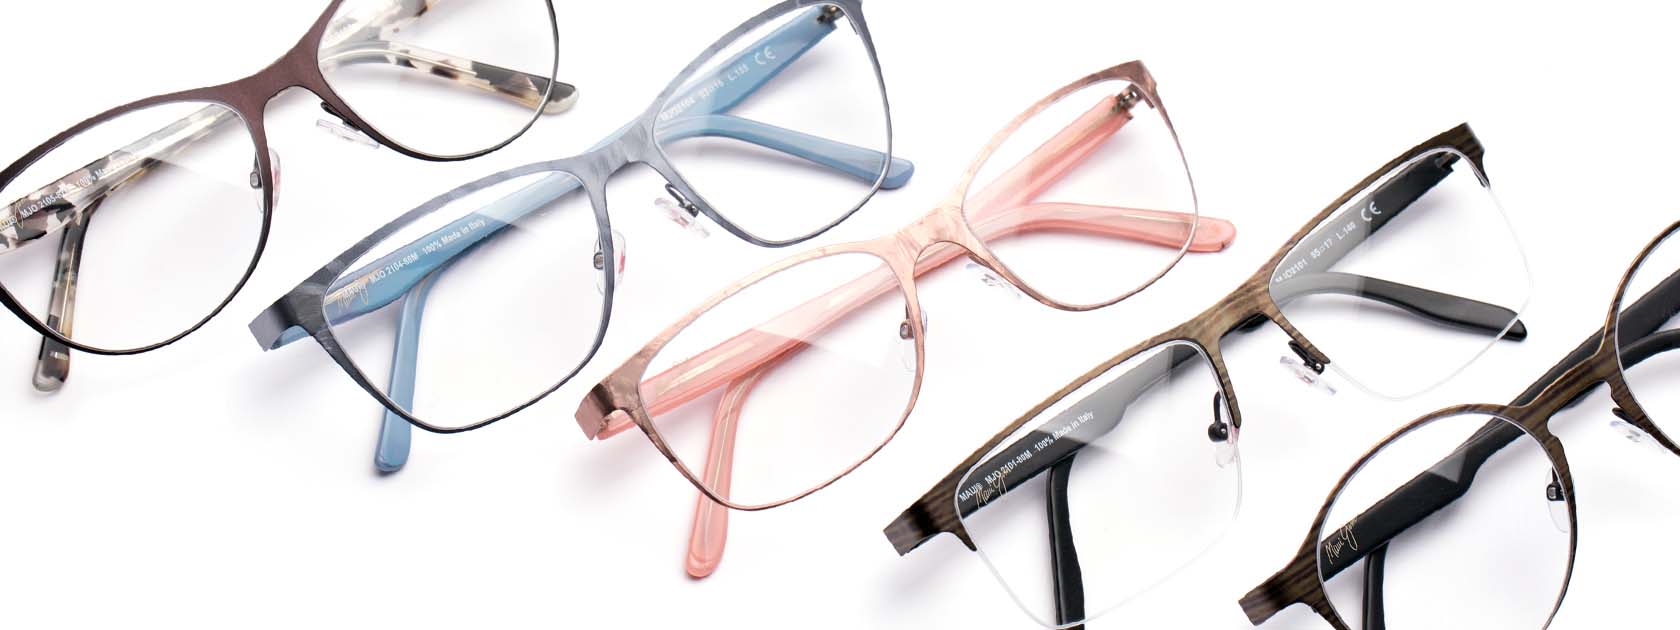 cinco gafas oftálmicas expuestas sobre fondo blanco